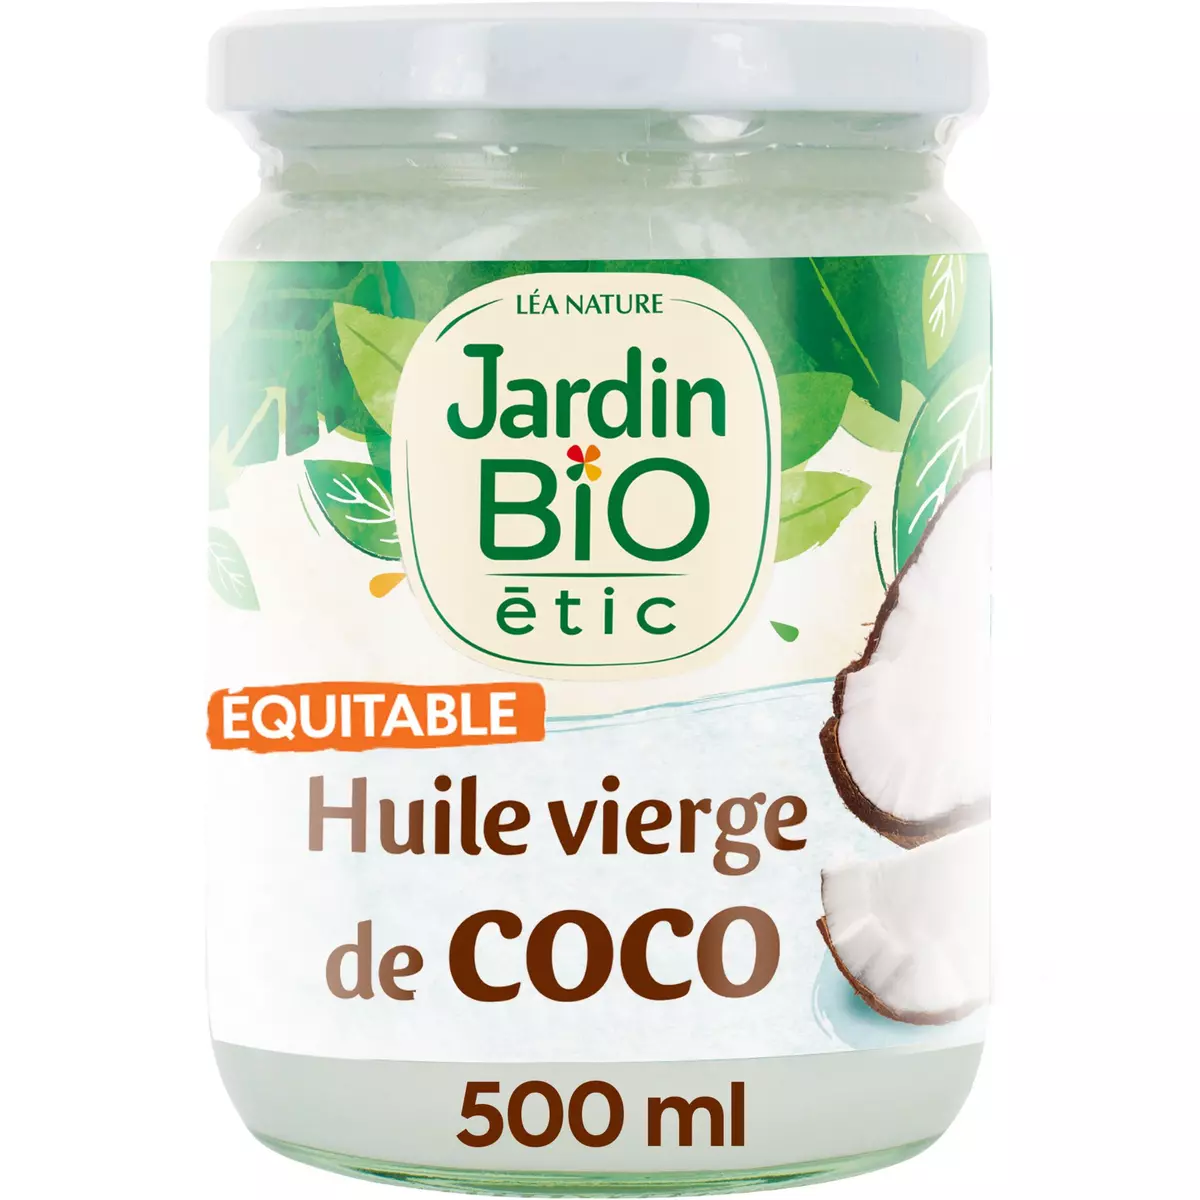 JARDIN BIO ETIC Huile vierge de coco 50cl